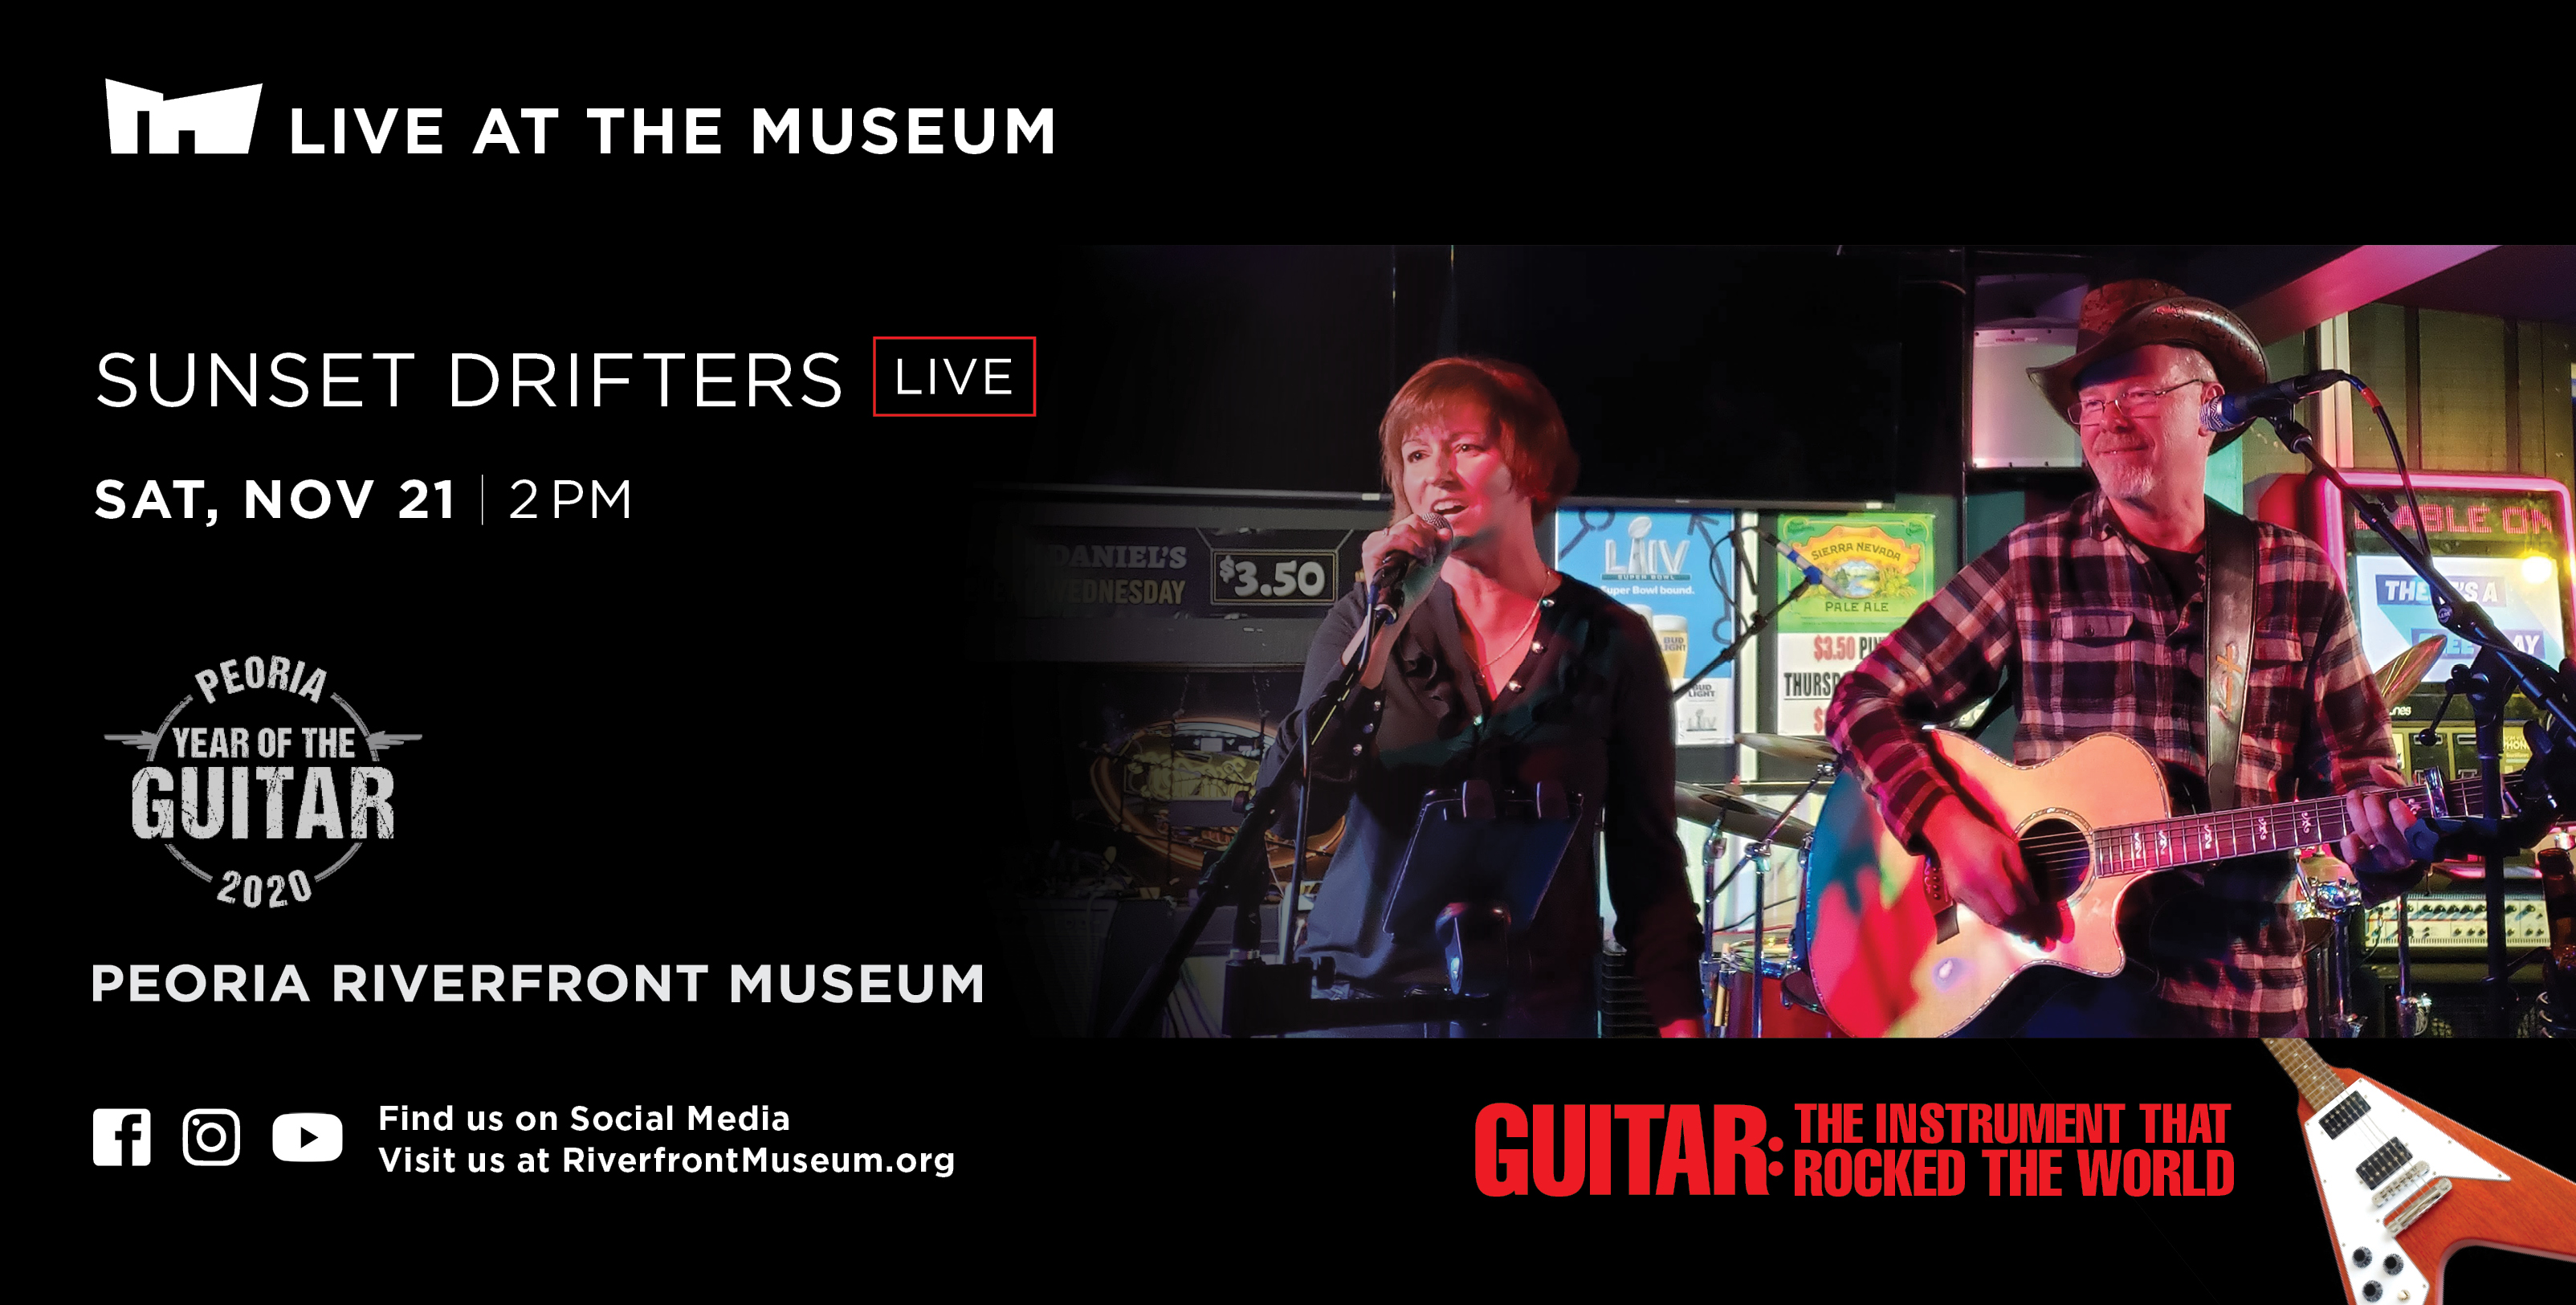 Exhibit Guitar Programs Sunset Drifters